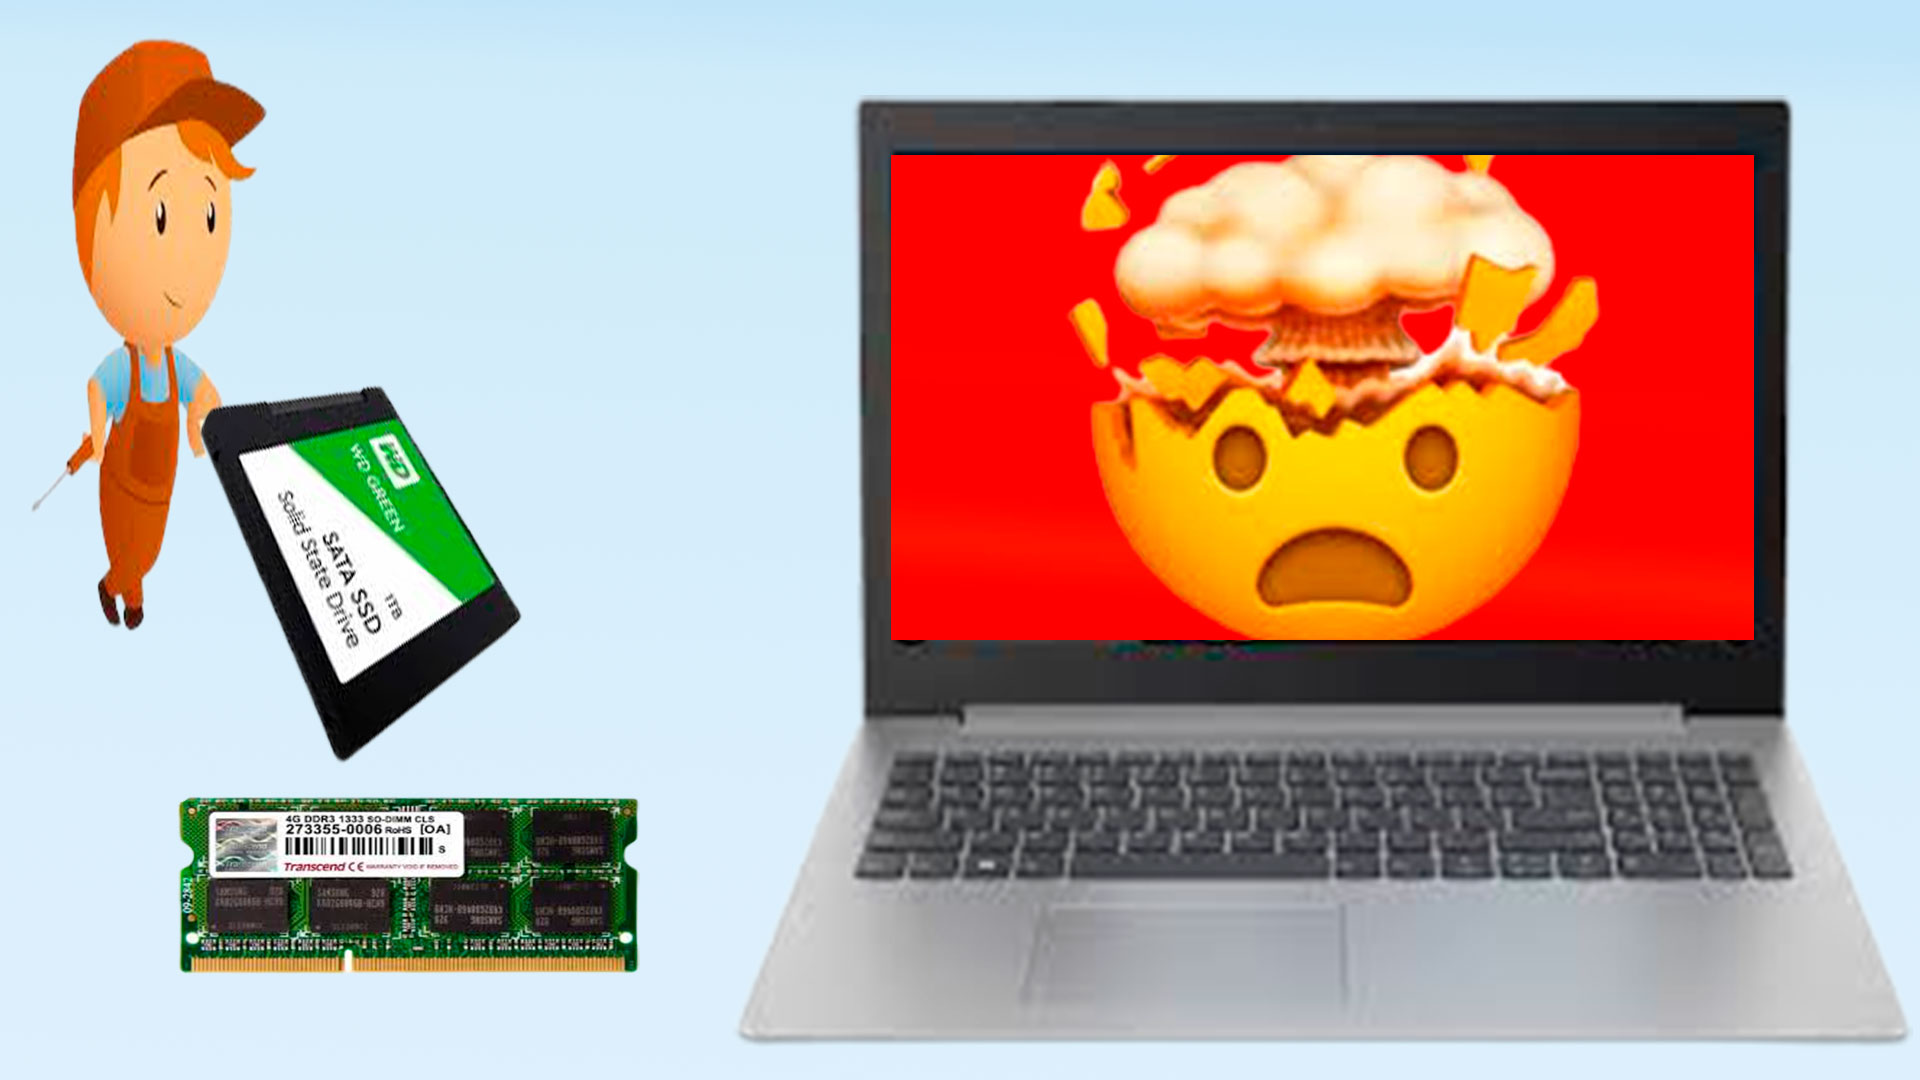 Апгрейд слабого ноутбука устанавливаем SSD диск и увеличиваем оперативную память